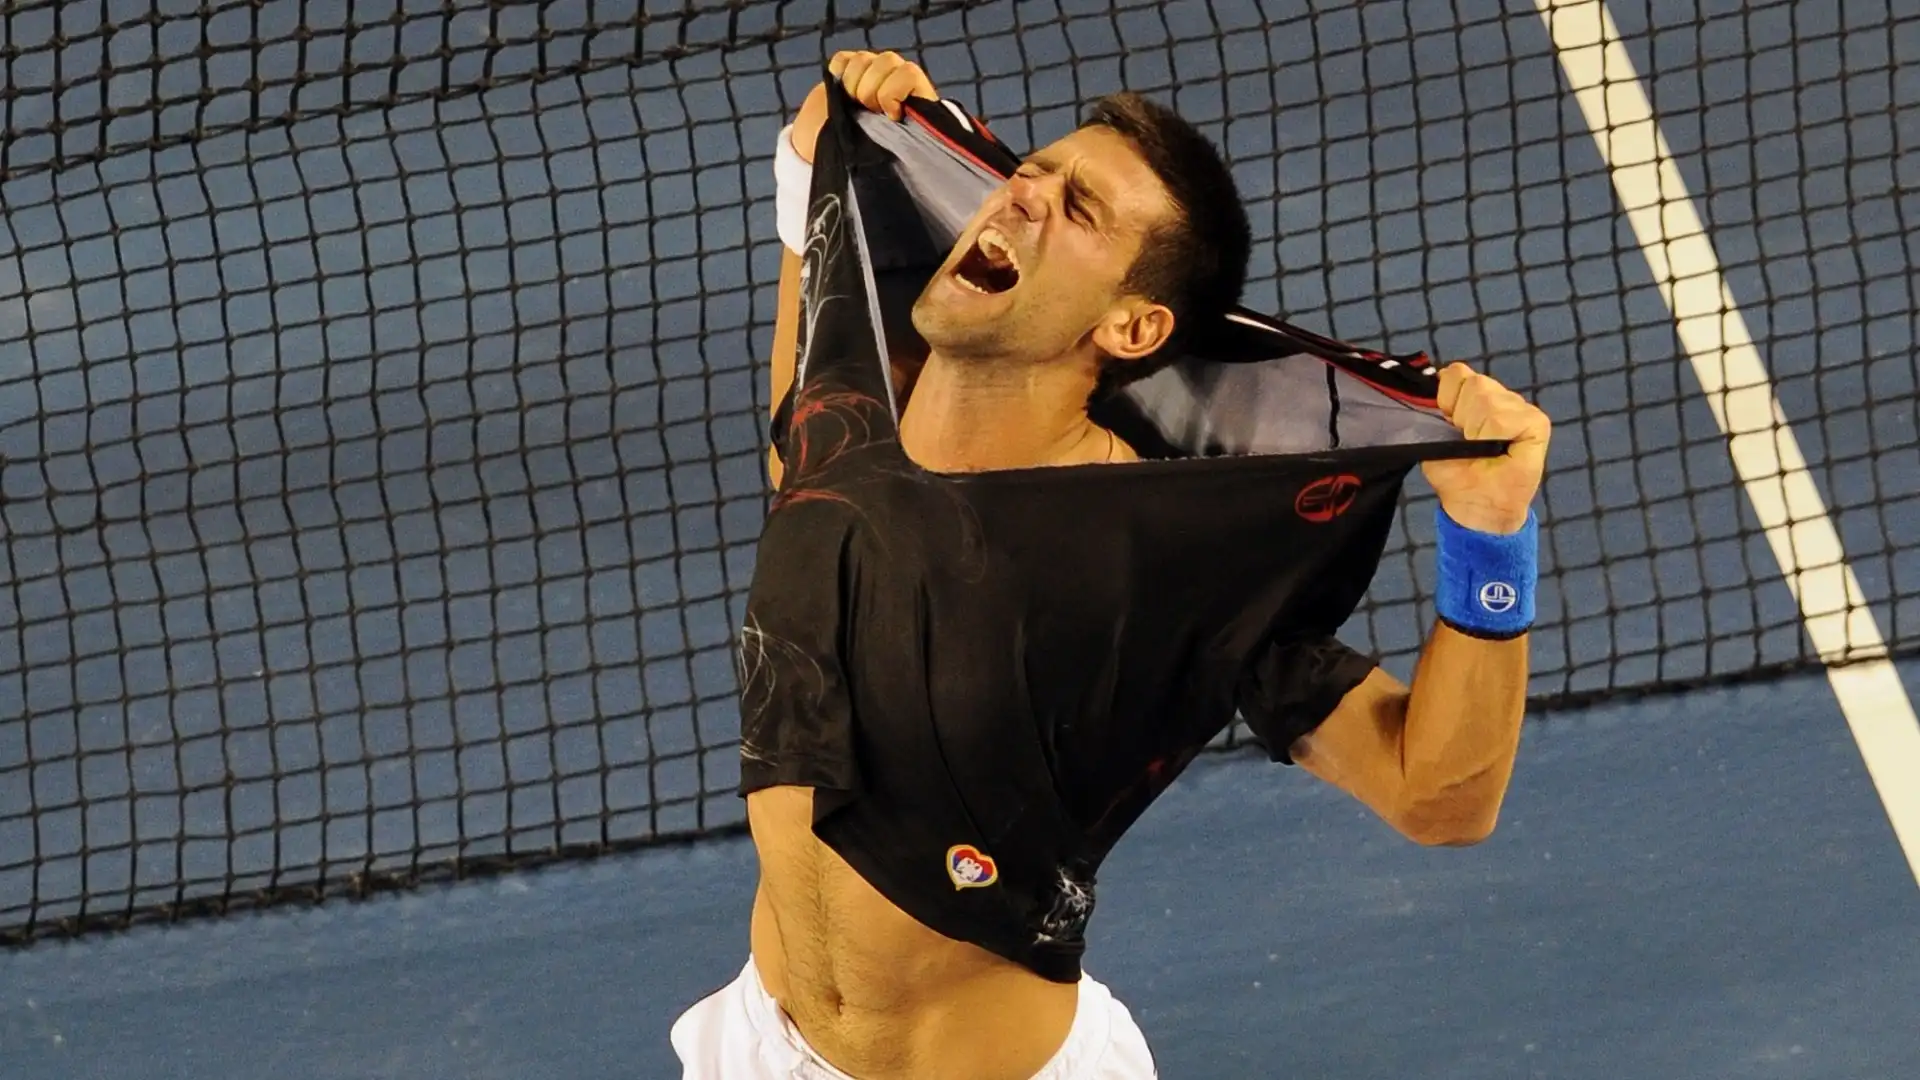 Djokovic aveva esultato così altre volte in passato, come nel 2012 dopo la vittoria contro Nadal all'Australian Open, dopo 6 ore